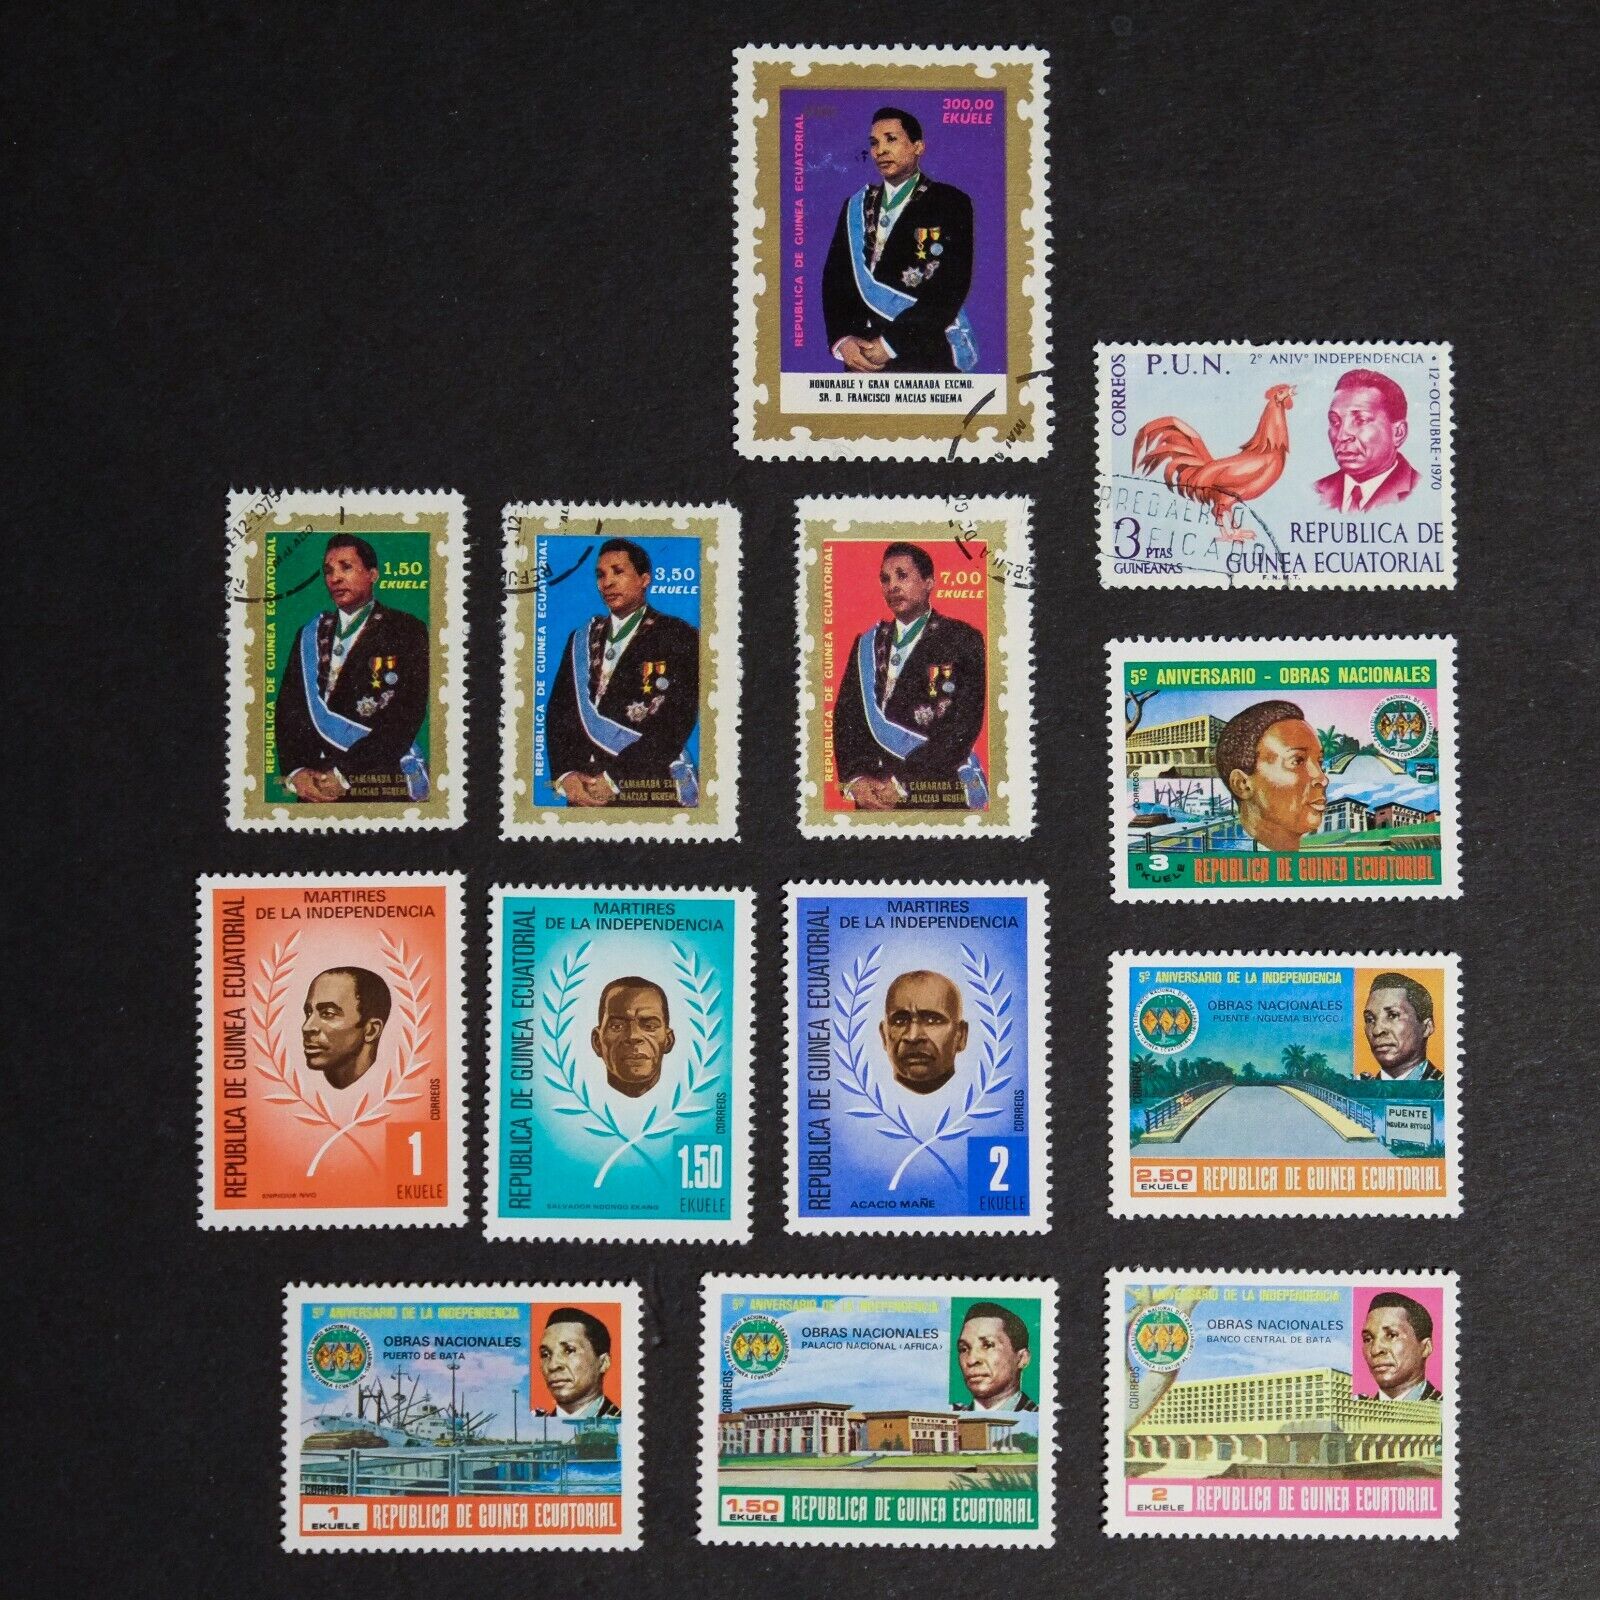 Vintage EQUATORIAL GUINEA Stamps Bundle Set - 1970s